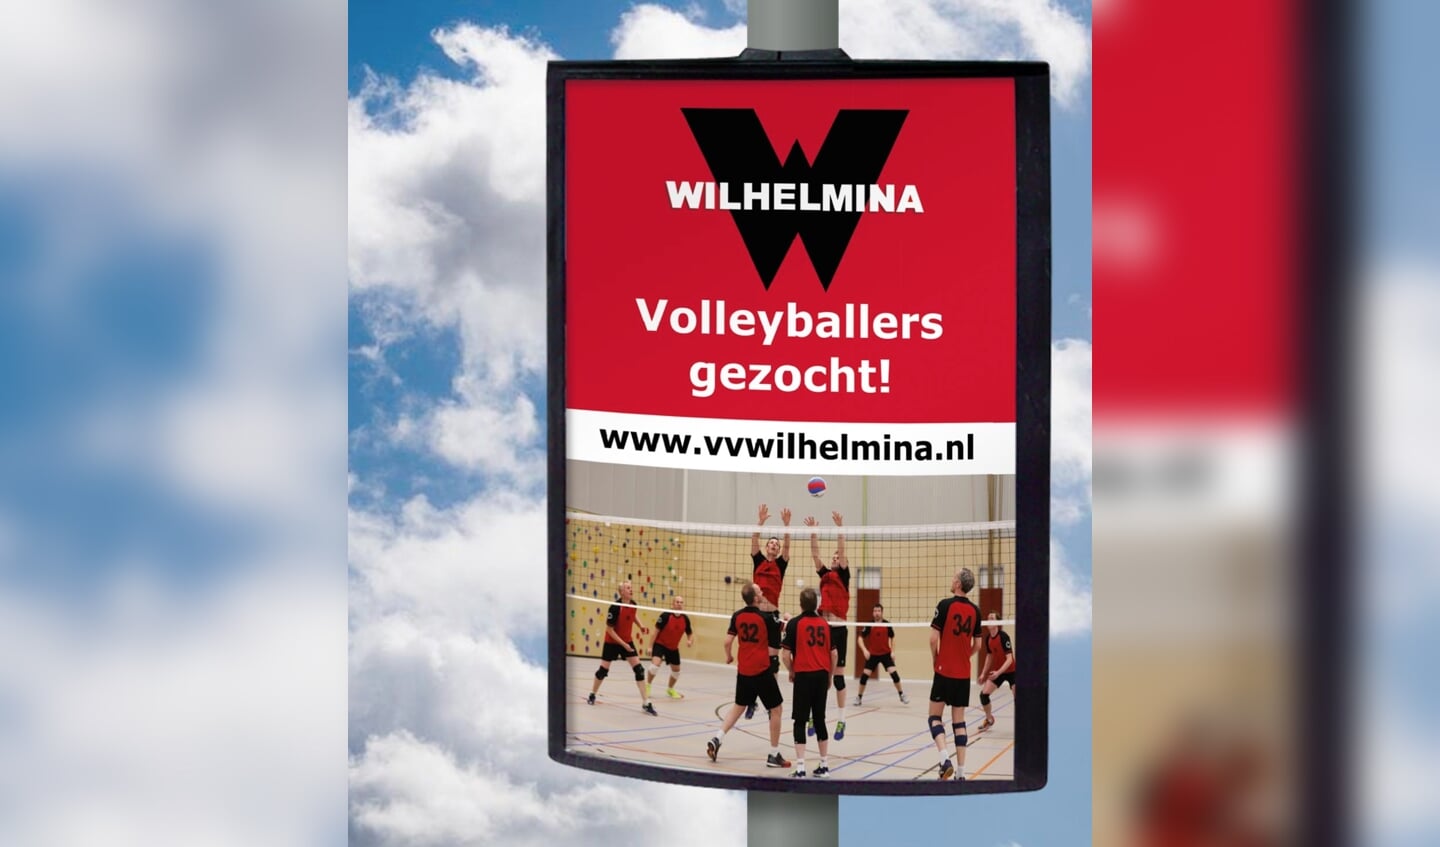 De stad is gevuld met posters voor de volleybalvereniging